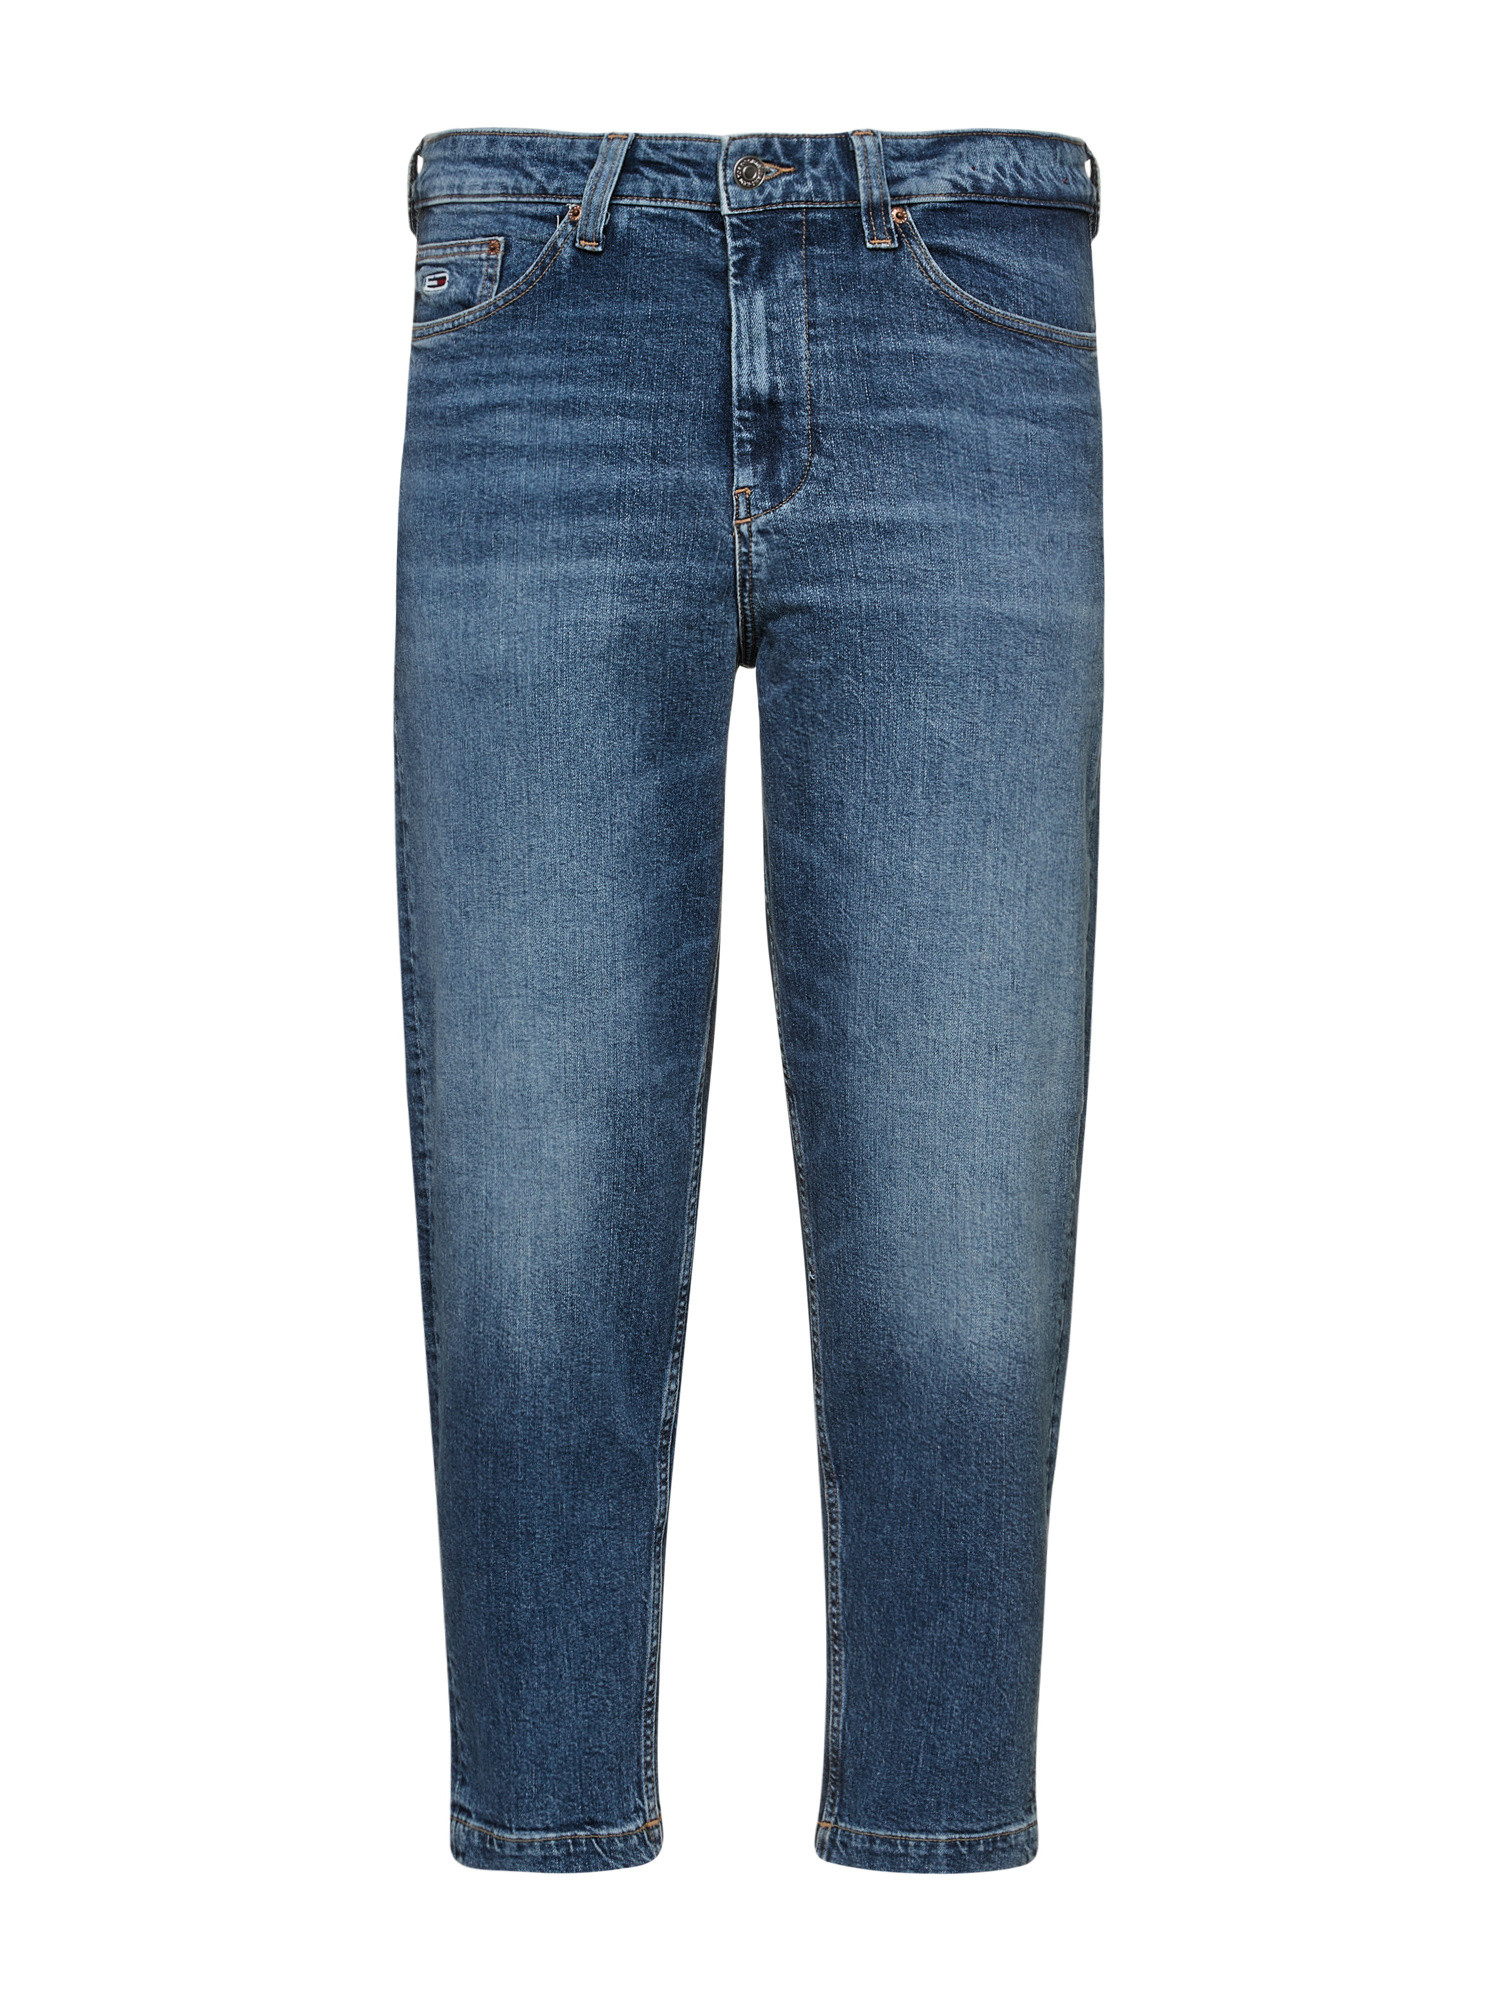 Tommy Jeans -Five pocket jeans, Denim, large image number 0